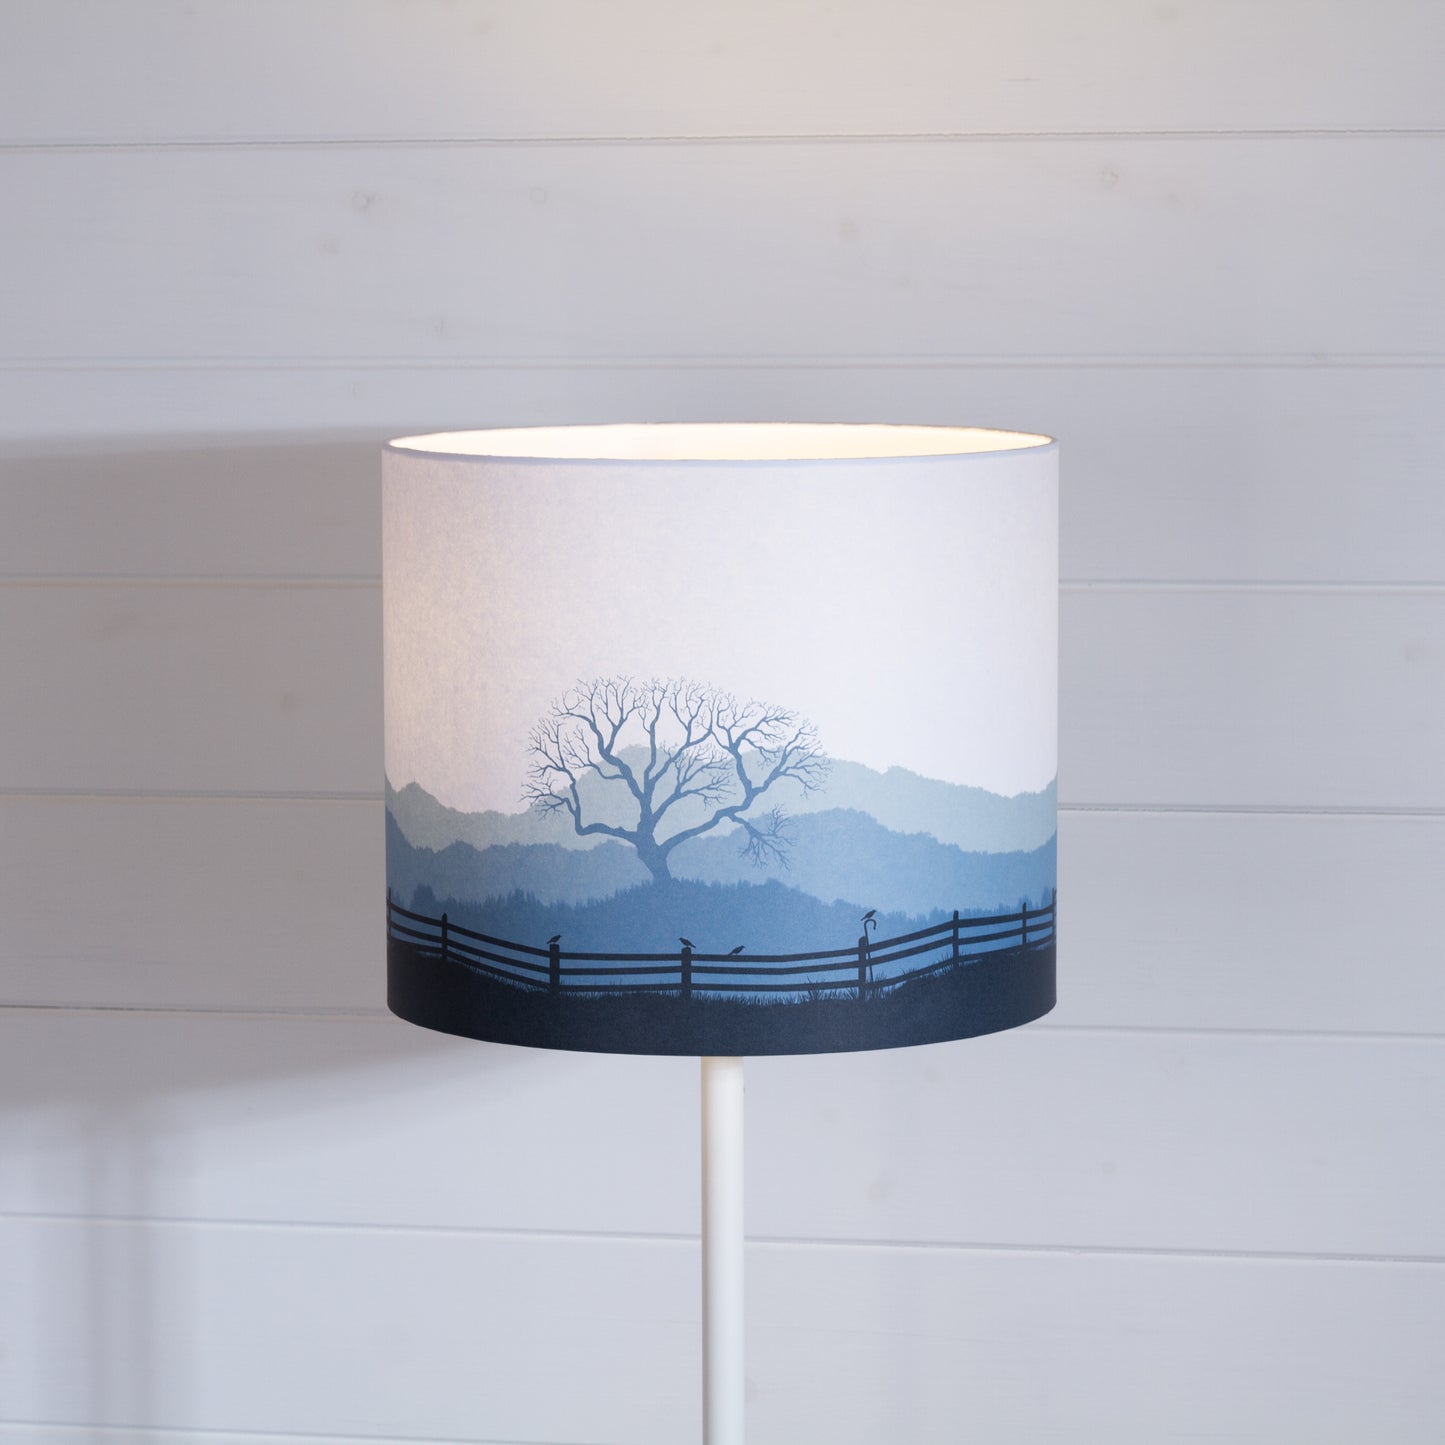 Drum Lamp Shade - Landscape Gate Blue, 30cm(d) x 25cm(h)